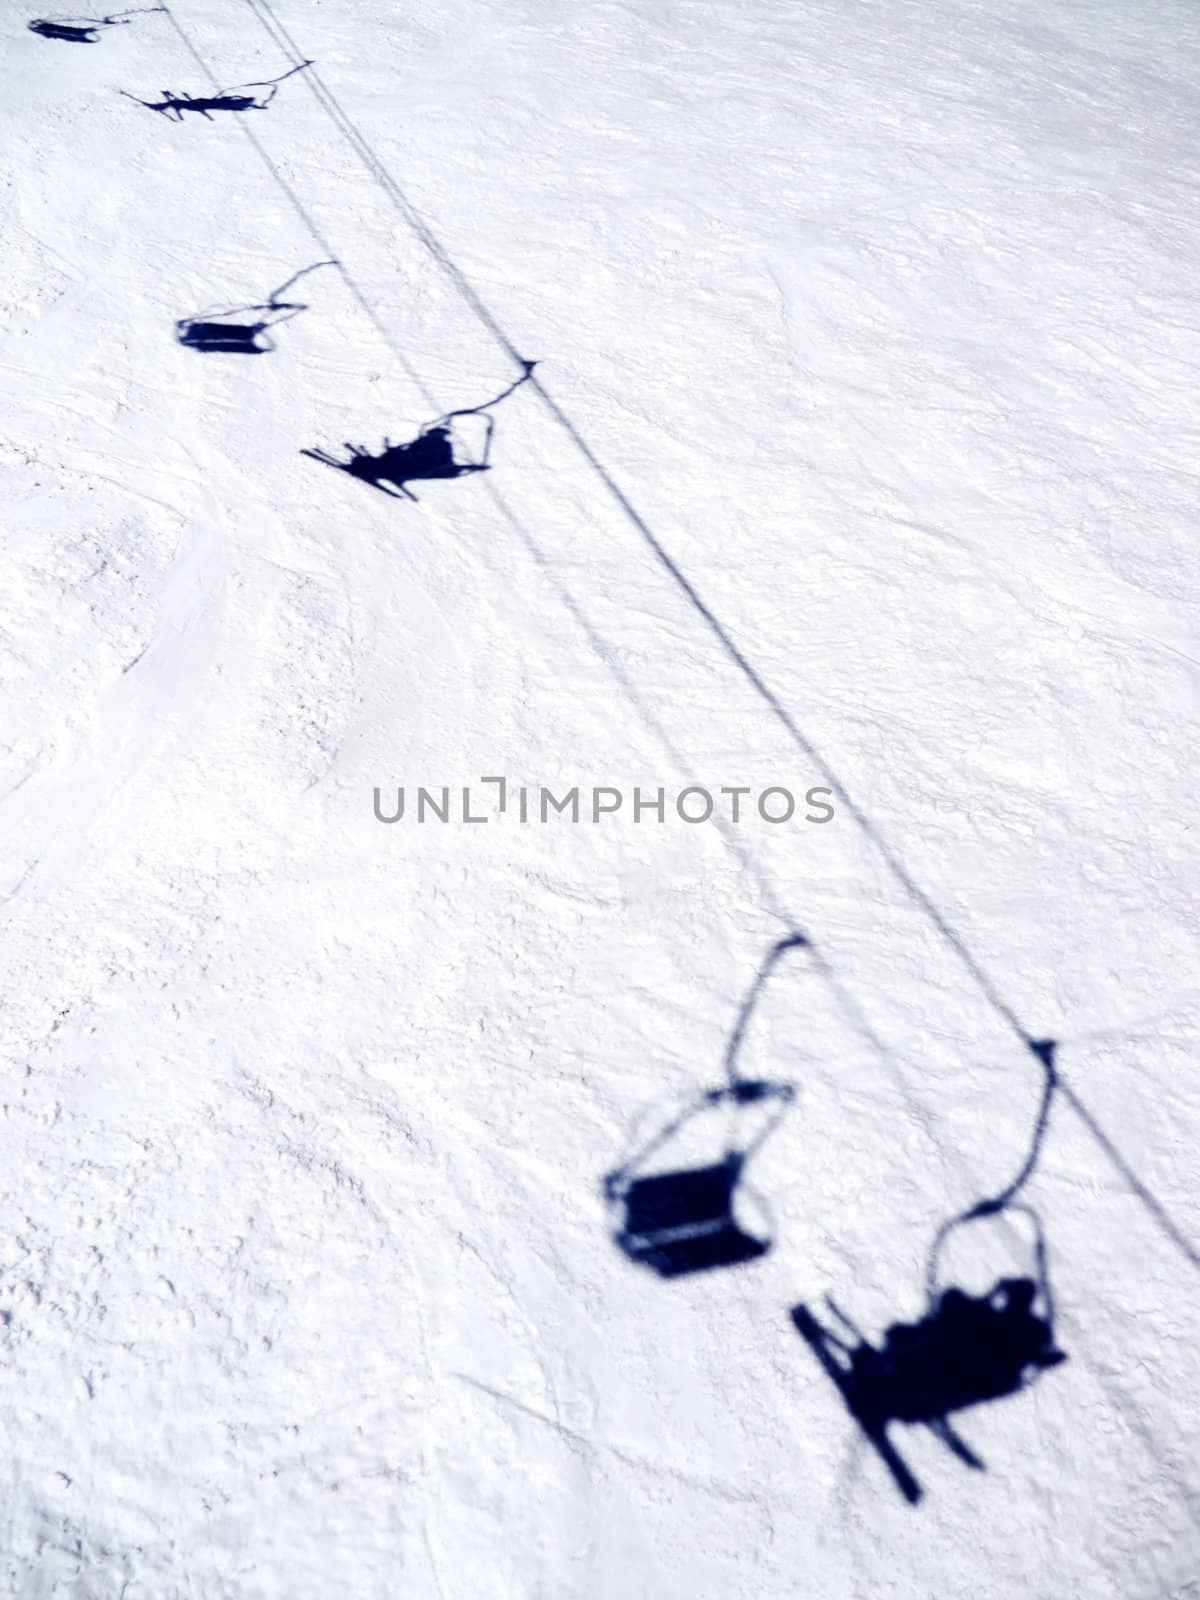 ski lift by yucas